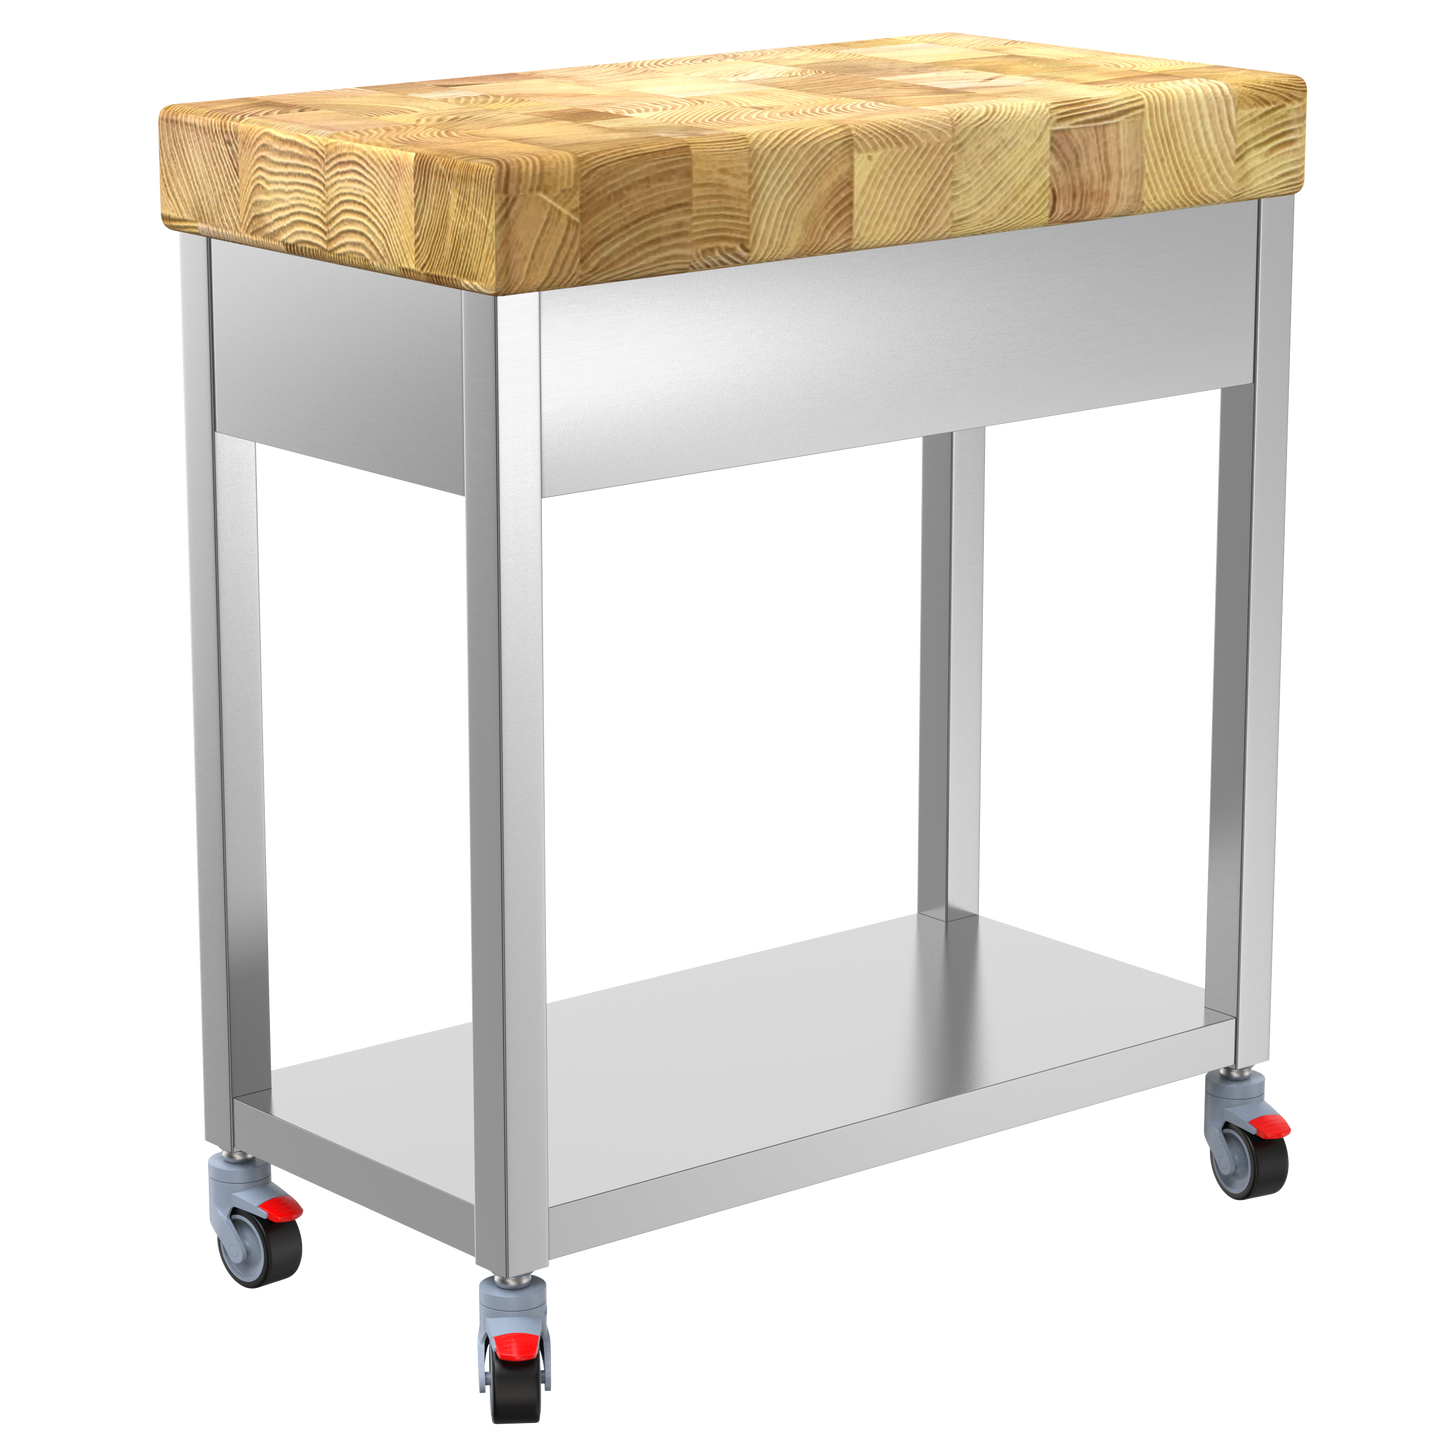 Keukentrolley met houten hakblok op wielen met frame van RVS